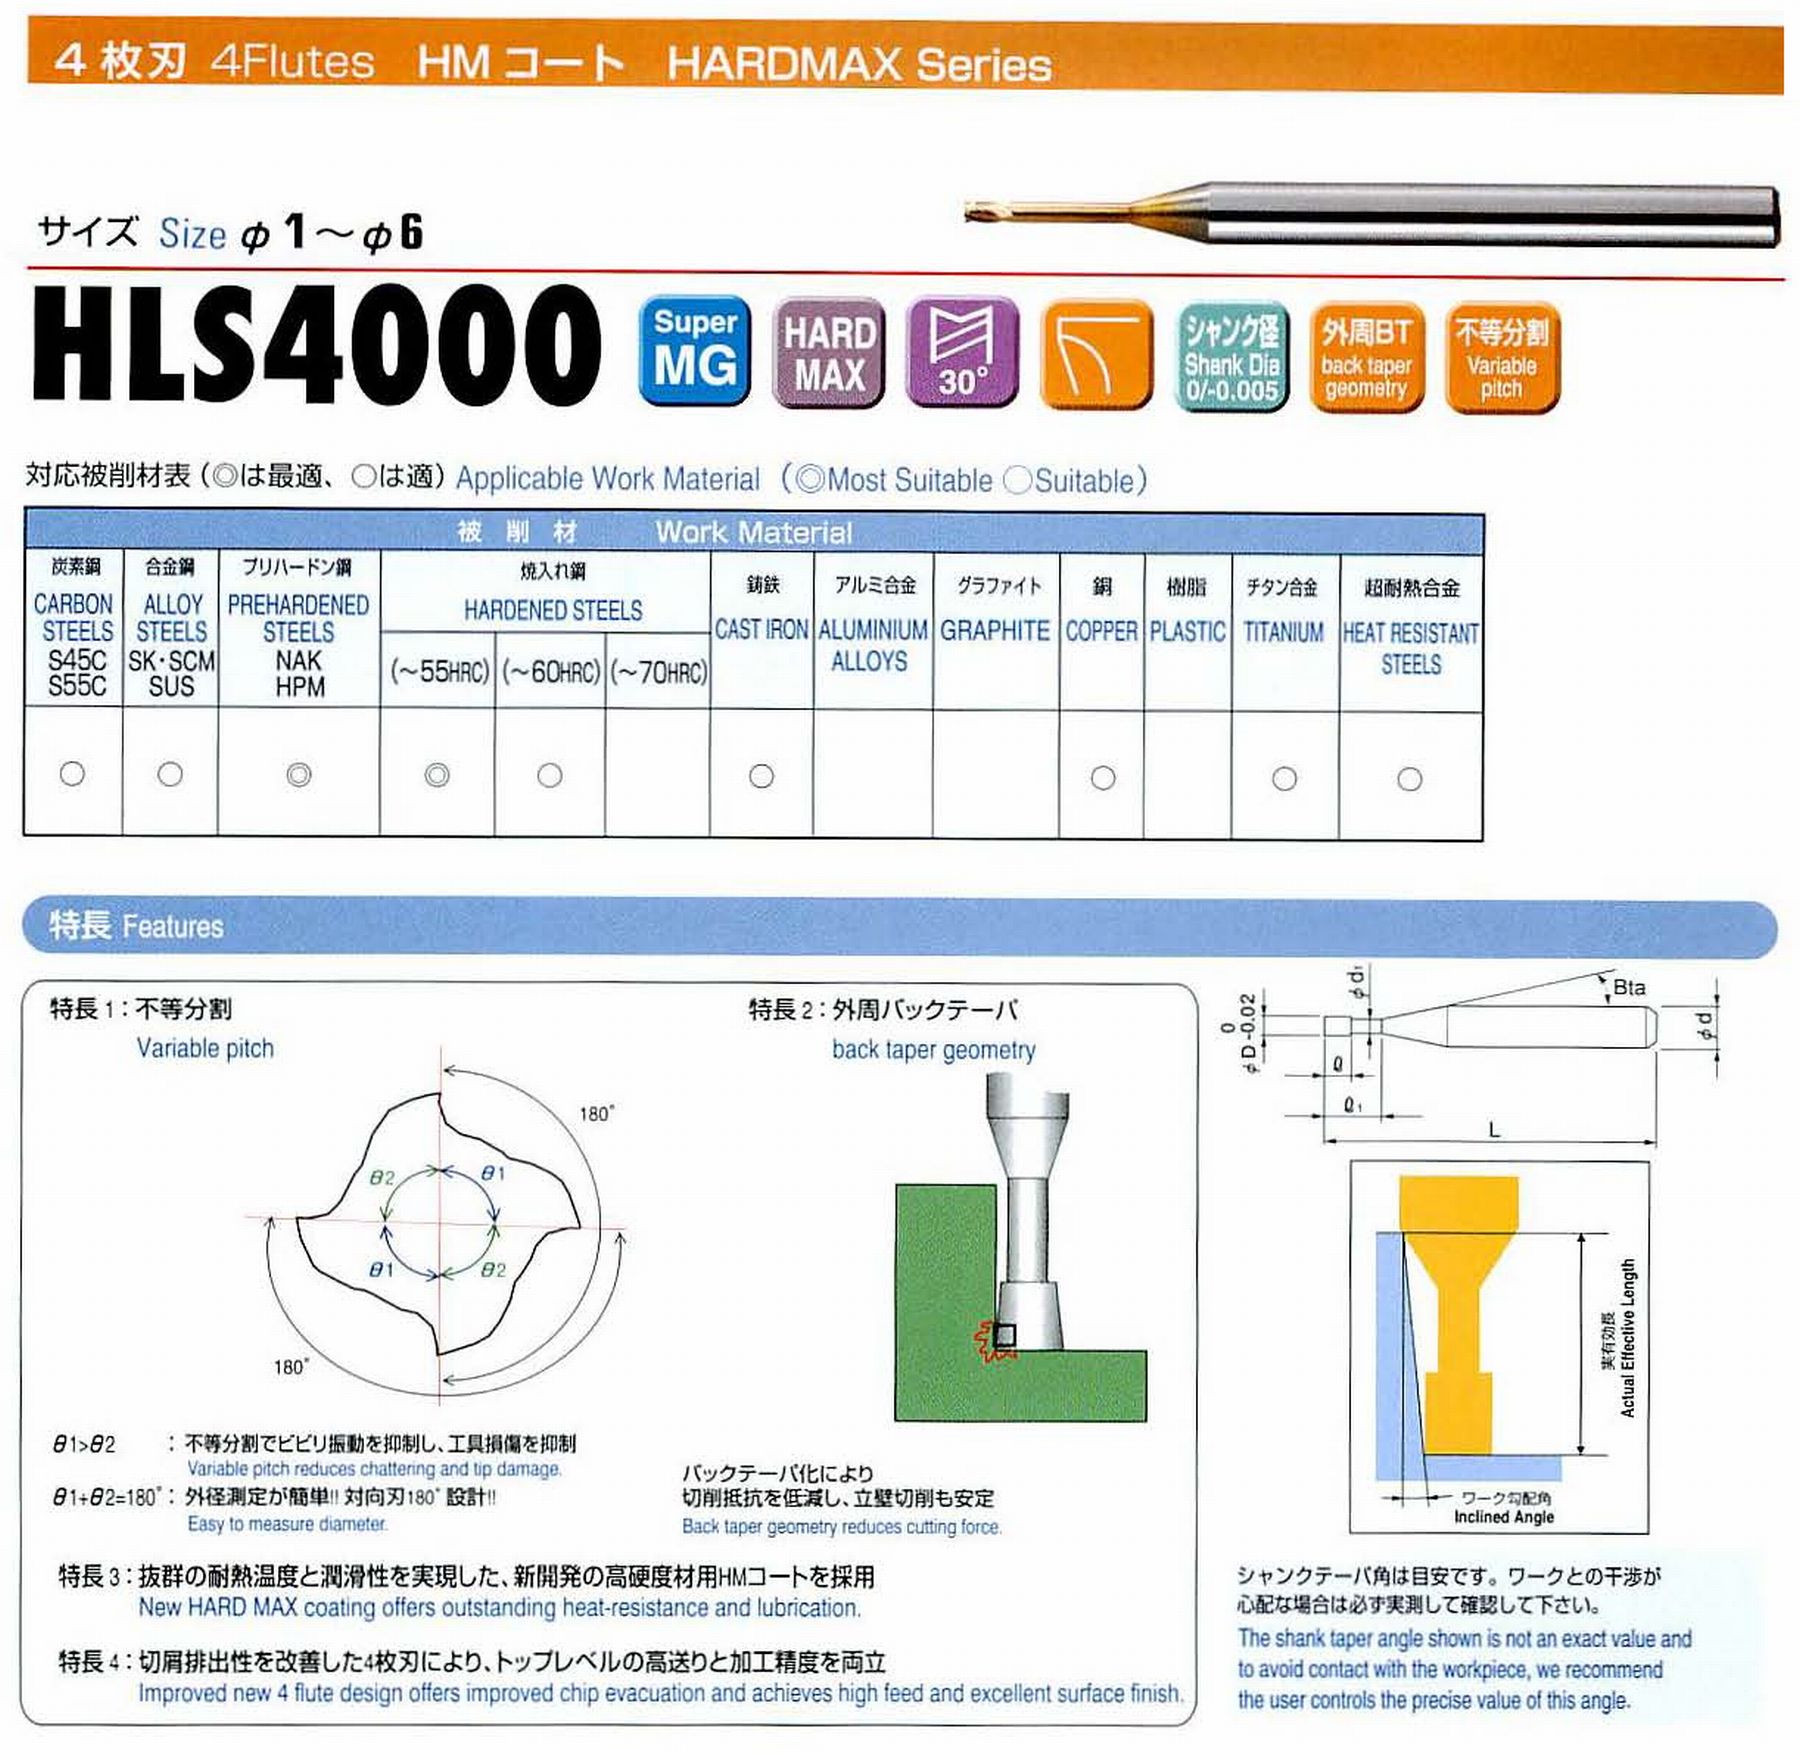 ユニオンツール 4枚刃 HLS4012-160 外径1.2 有効長16 刃長1.2 首径1.14 シャンクテーパ角16° 全長60 シャンク径4